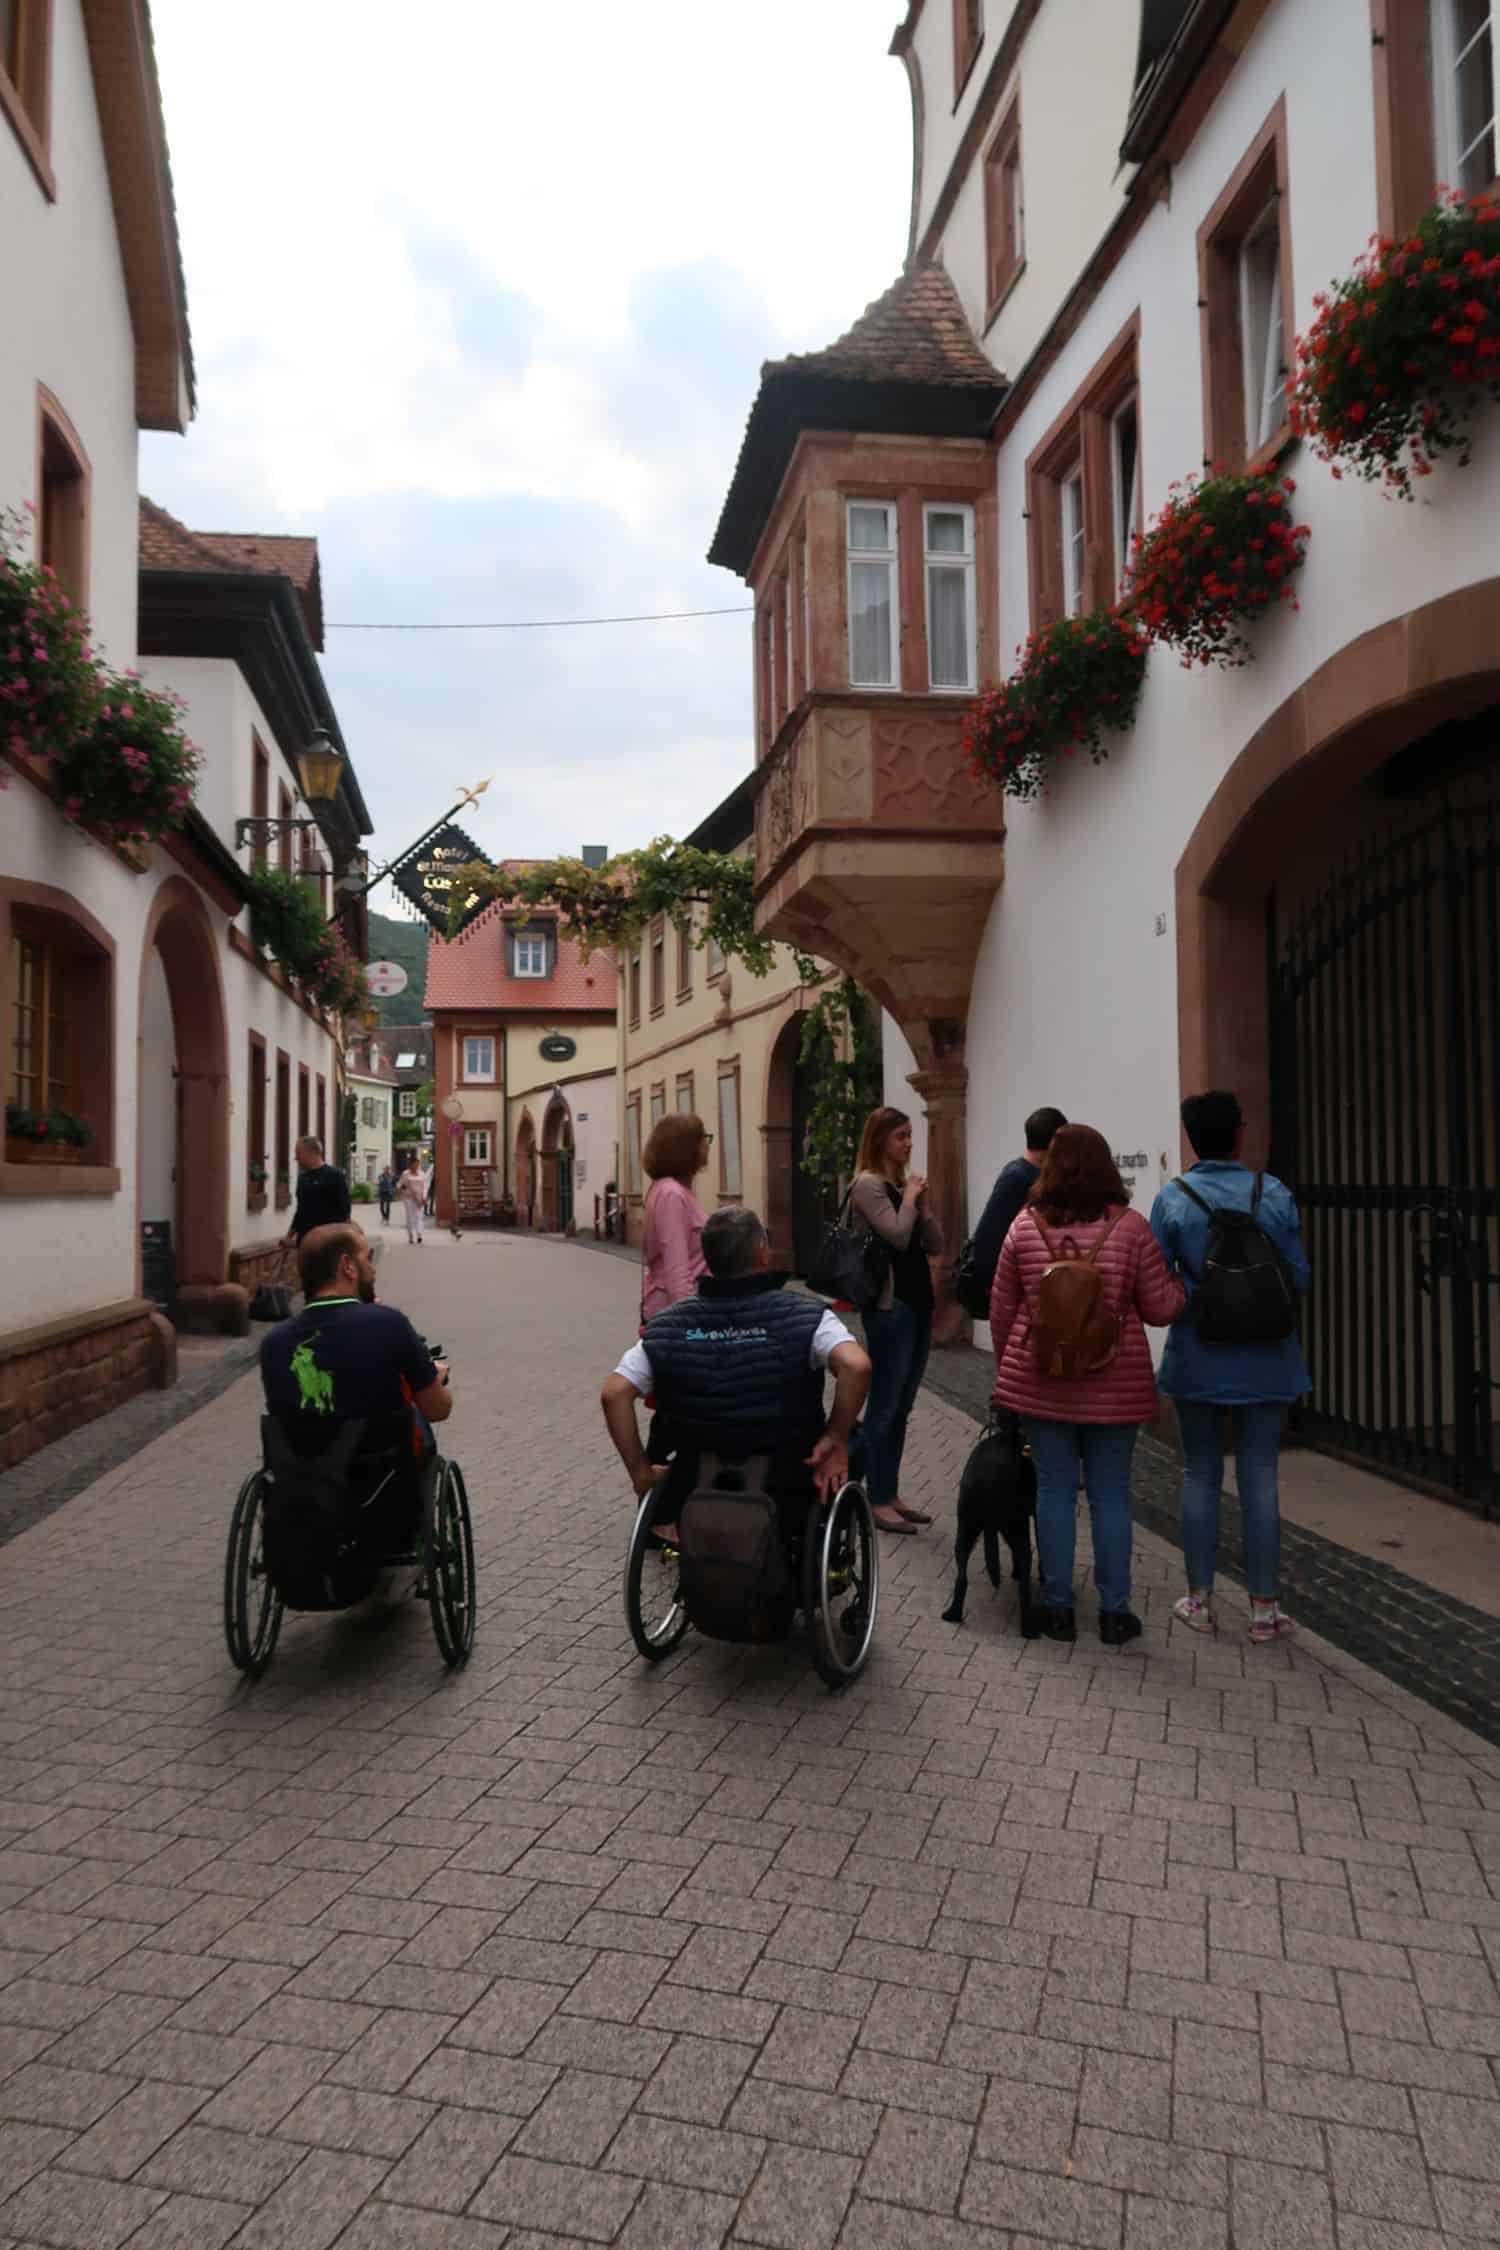 Fam Trip inclusivo por el Palatinado - Sur de Alemania - Día 1